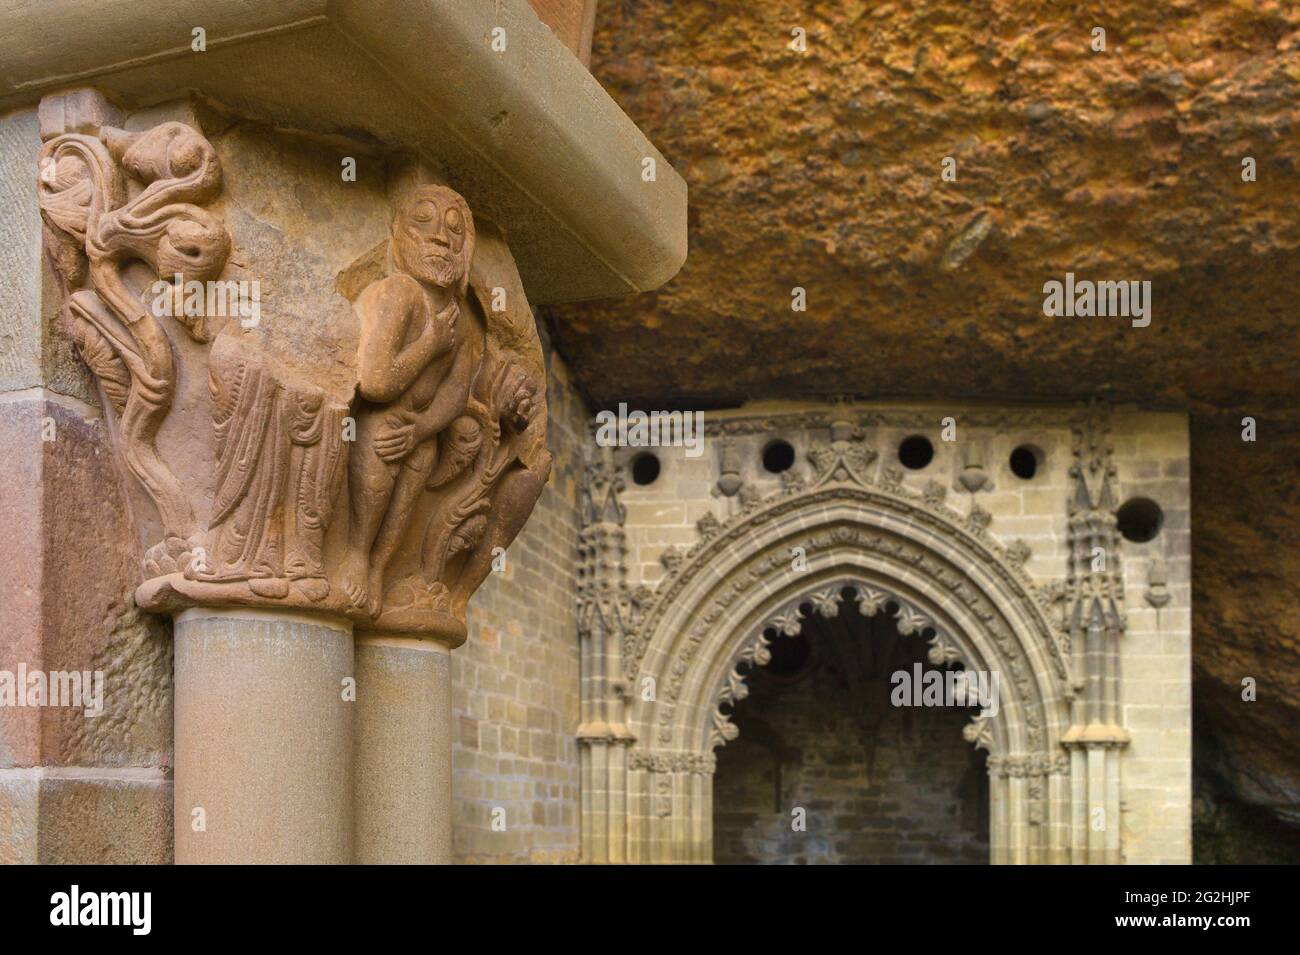 Il monastero di San Juan de la pena si trova a sud-ovest di Jaca, a Huesca, Spagna, è stato uno dei più importanti monasteri dell'Aragona nel Medioevo, la sua chiesa a due livelli è parzialmente scolpita nella pietra della grande scogliera che sovrasta Foto Stock